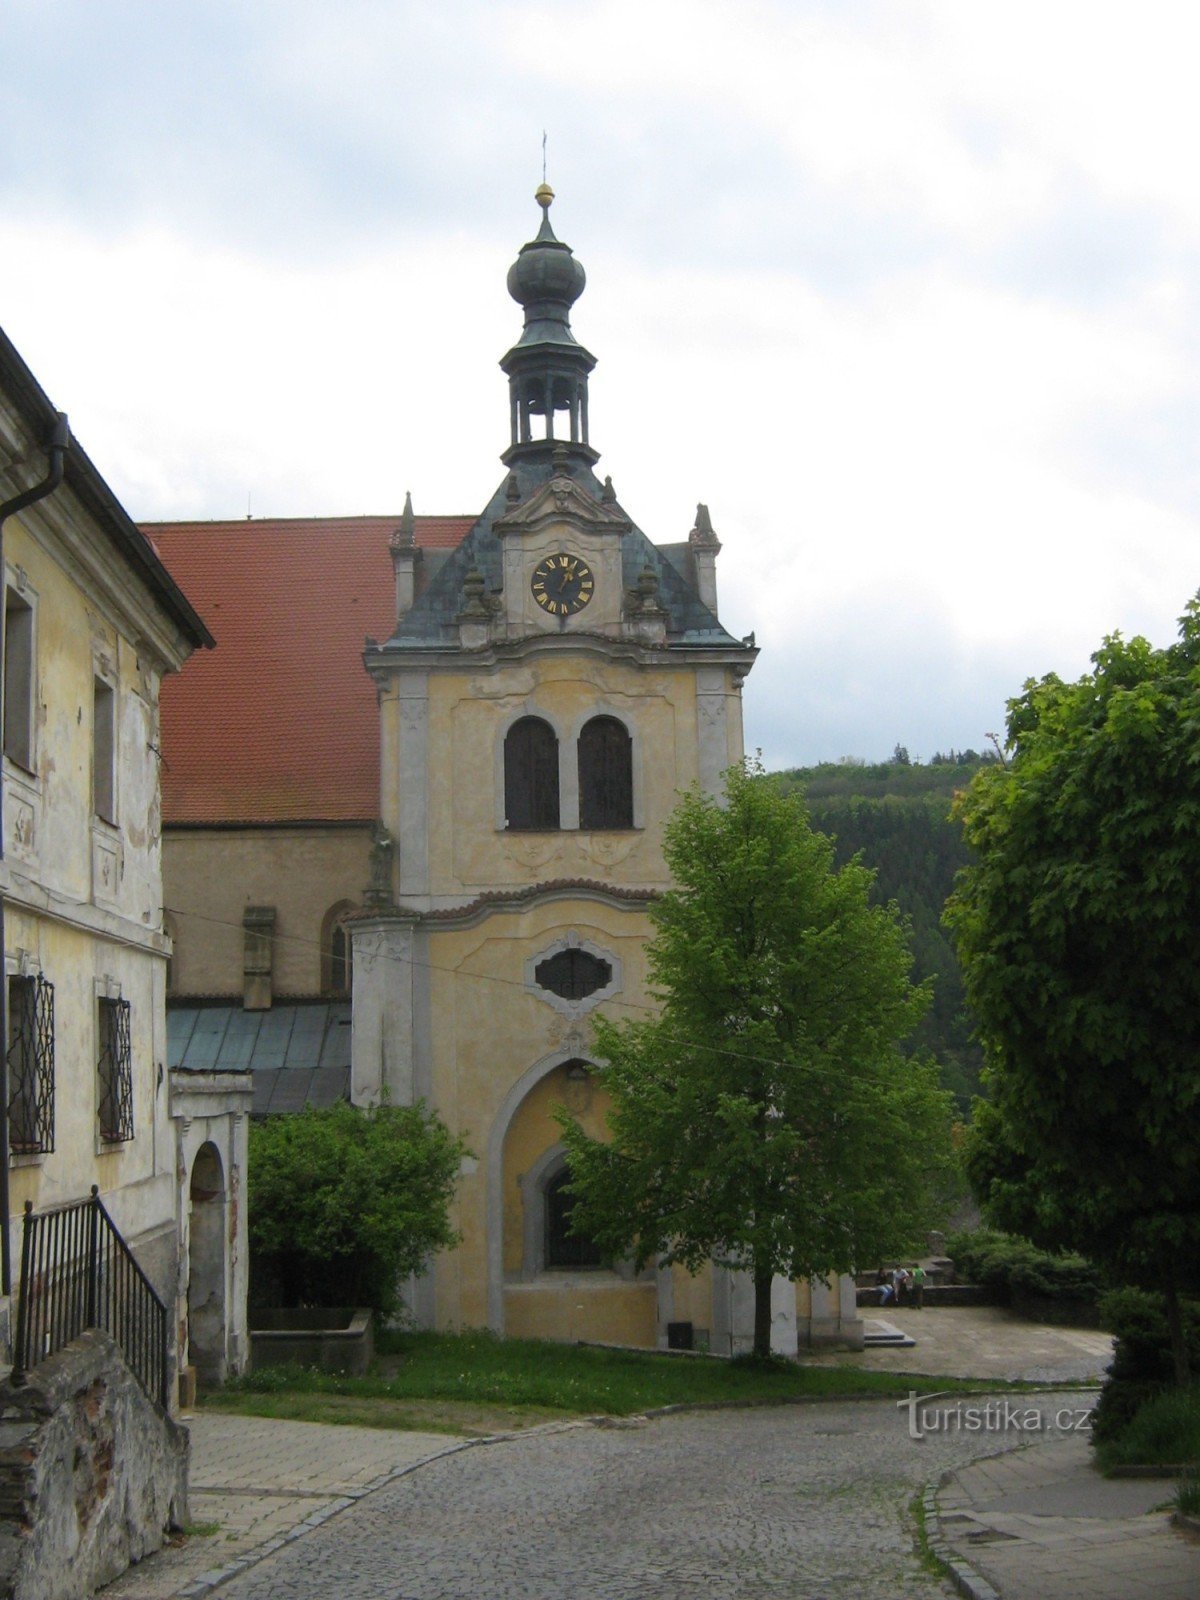 Жлутице - церковь св. Петра и Павла